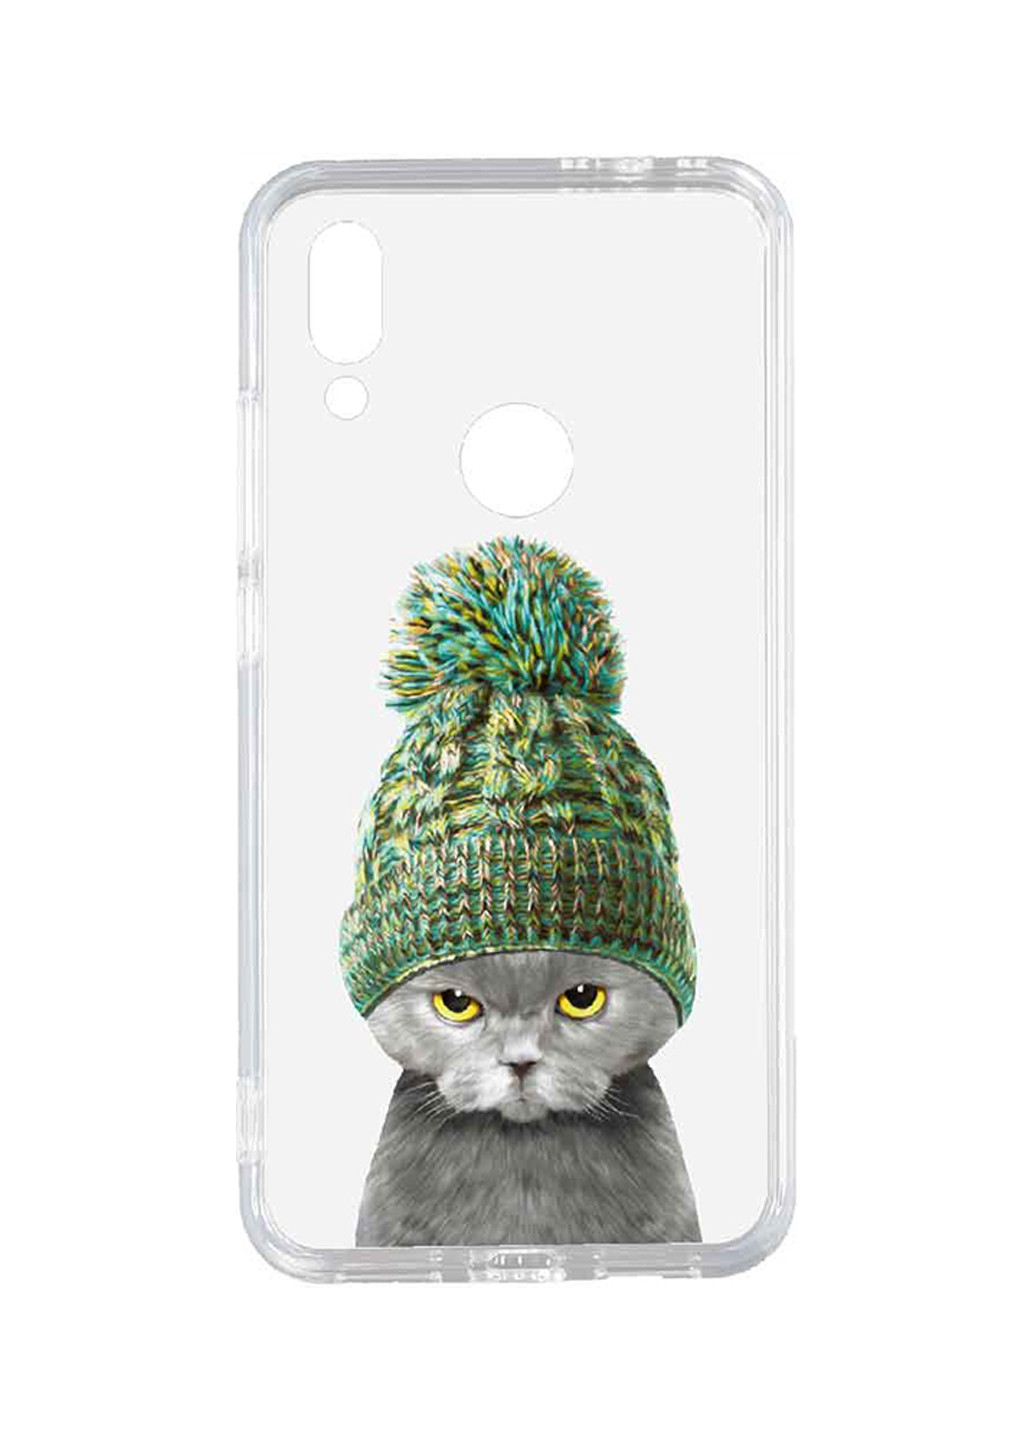 Чохол Acrylic + TPU Print Case Xiaomi Redmi 7 # 7 Cat In Hat Transparent Toto acrylic+tpu print case xiaomi redmi 7 #7 cat in hat transparent (146316914)